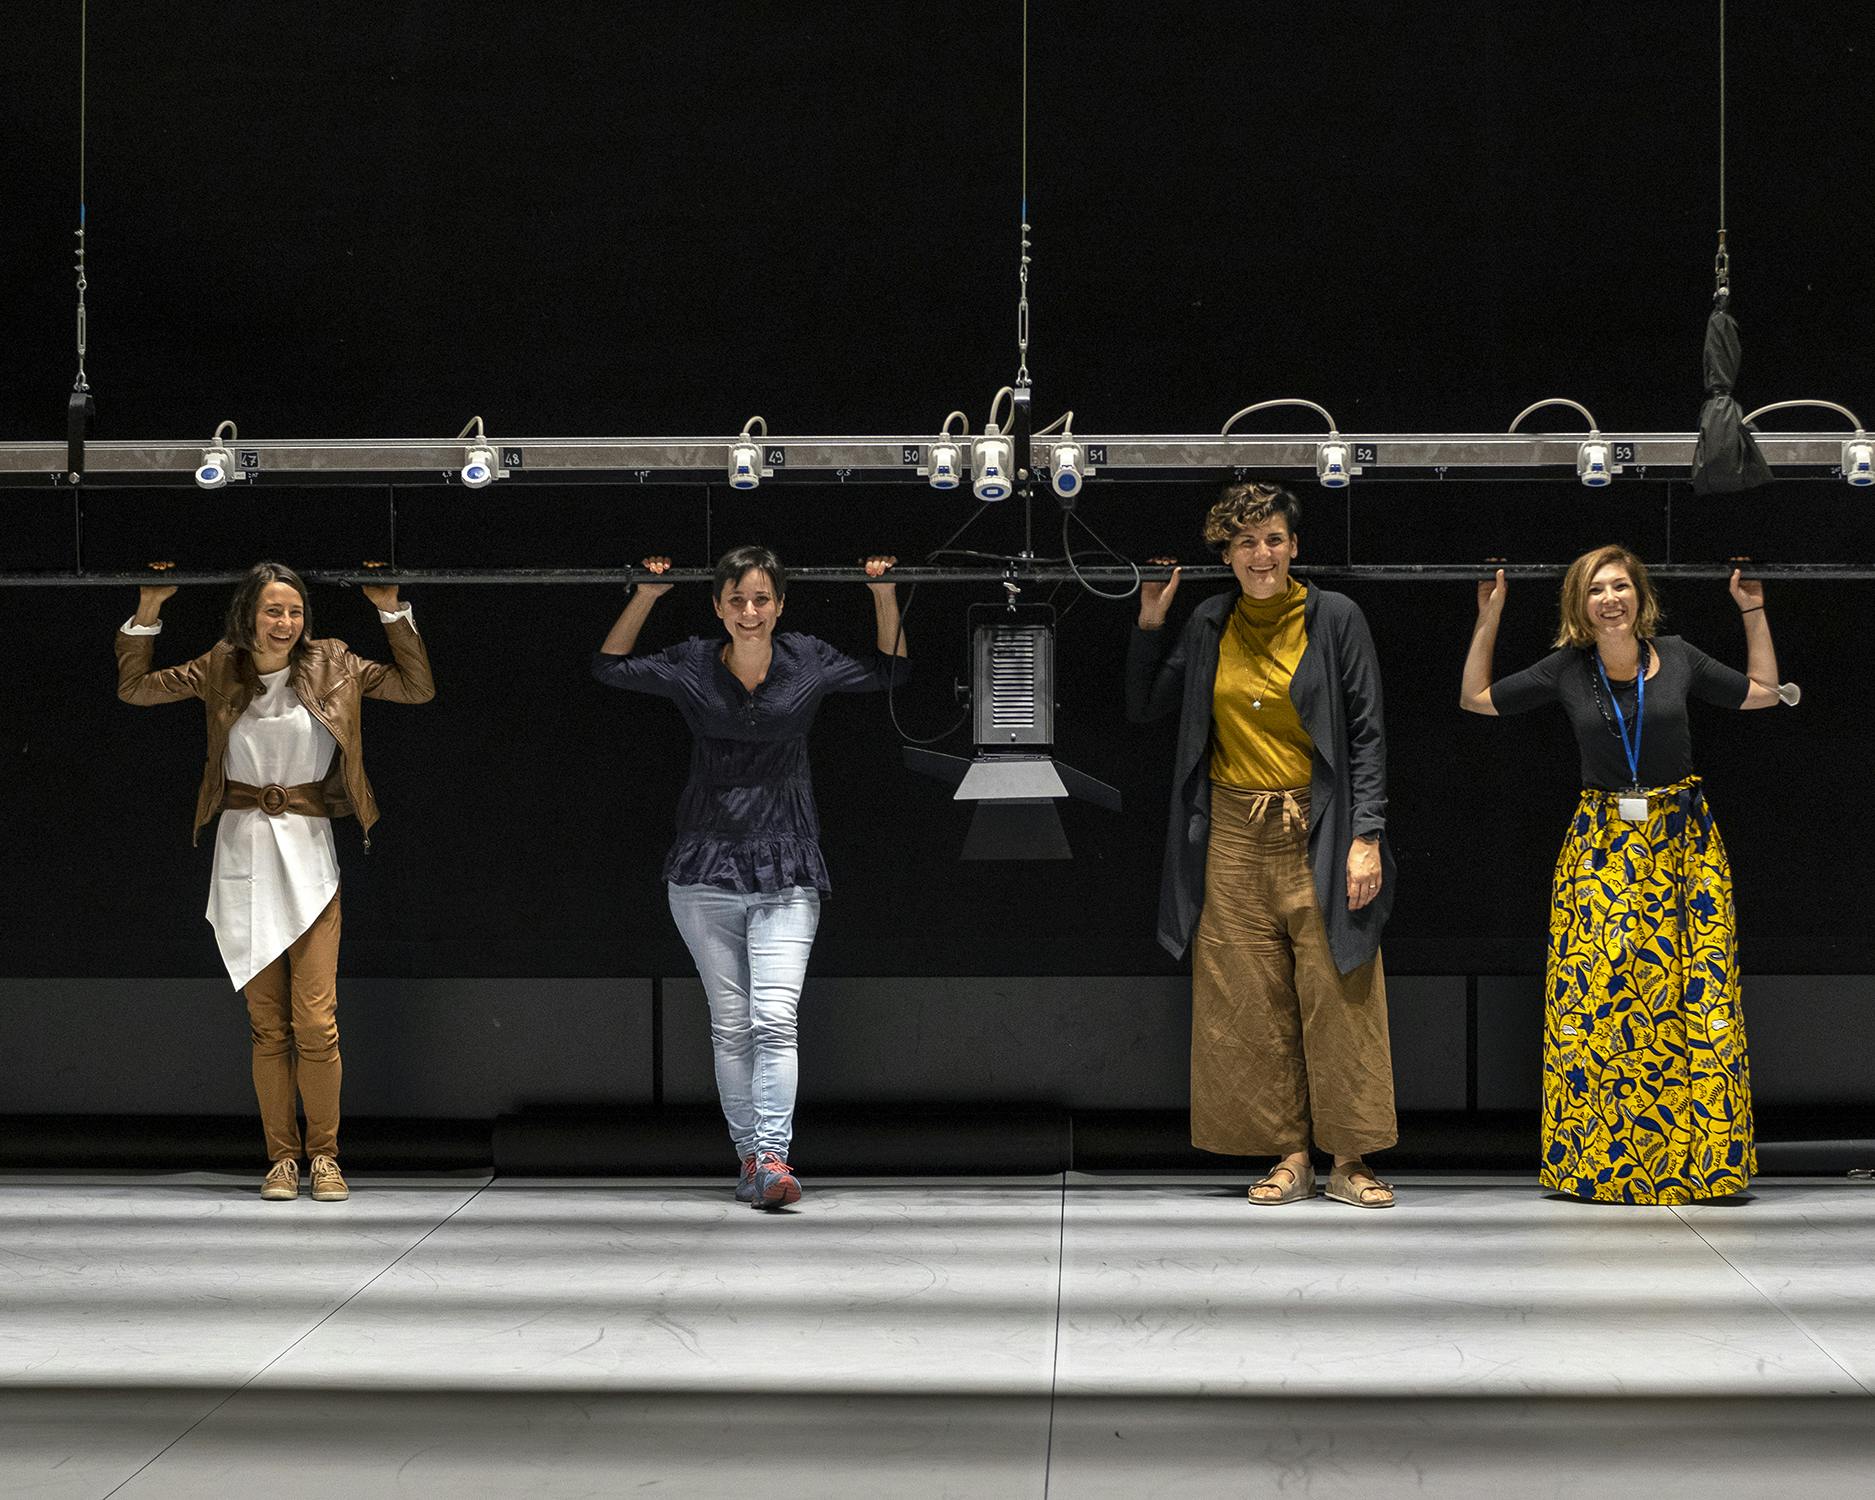 Gloria Stedile, Laura marongiu, Anna Consolati, Susanna Caldonazzi sul palco di un teatro